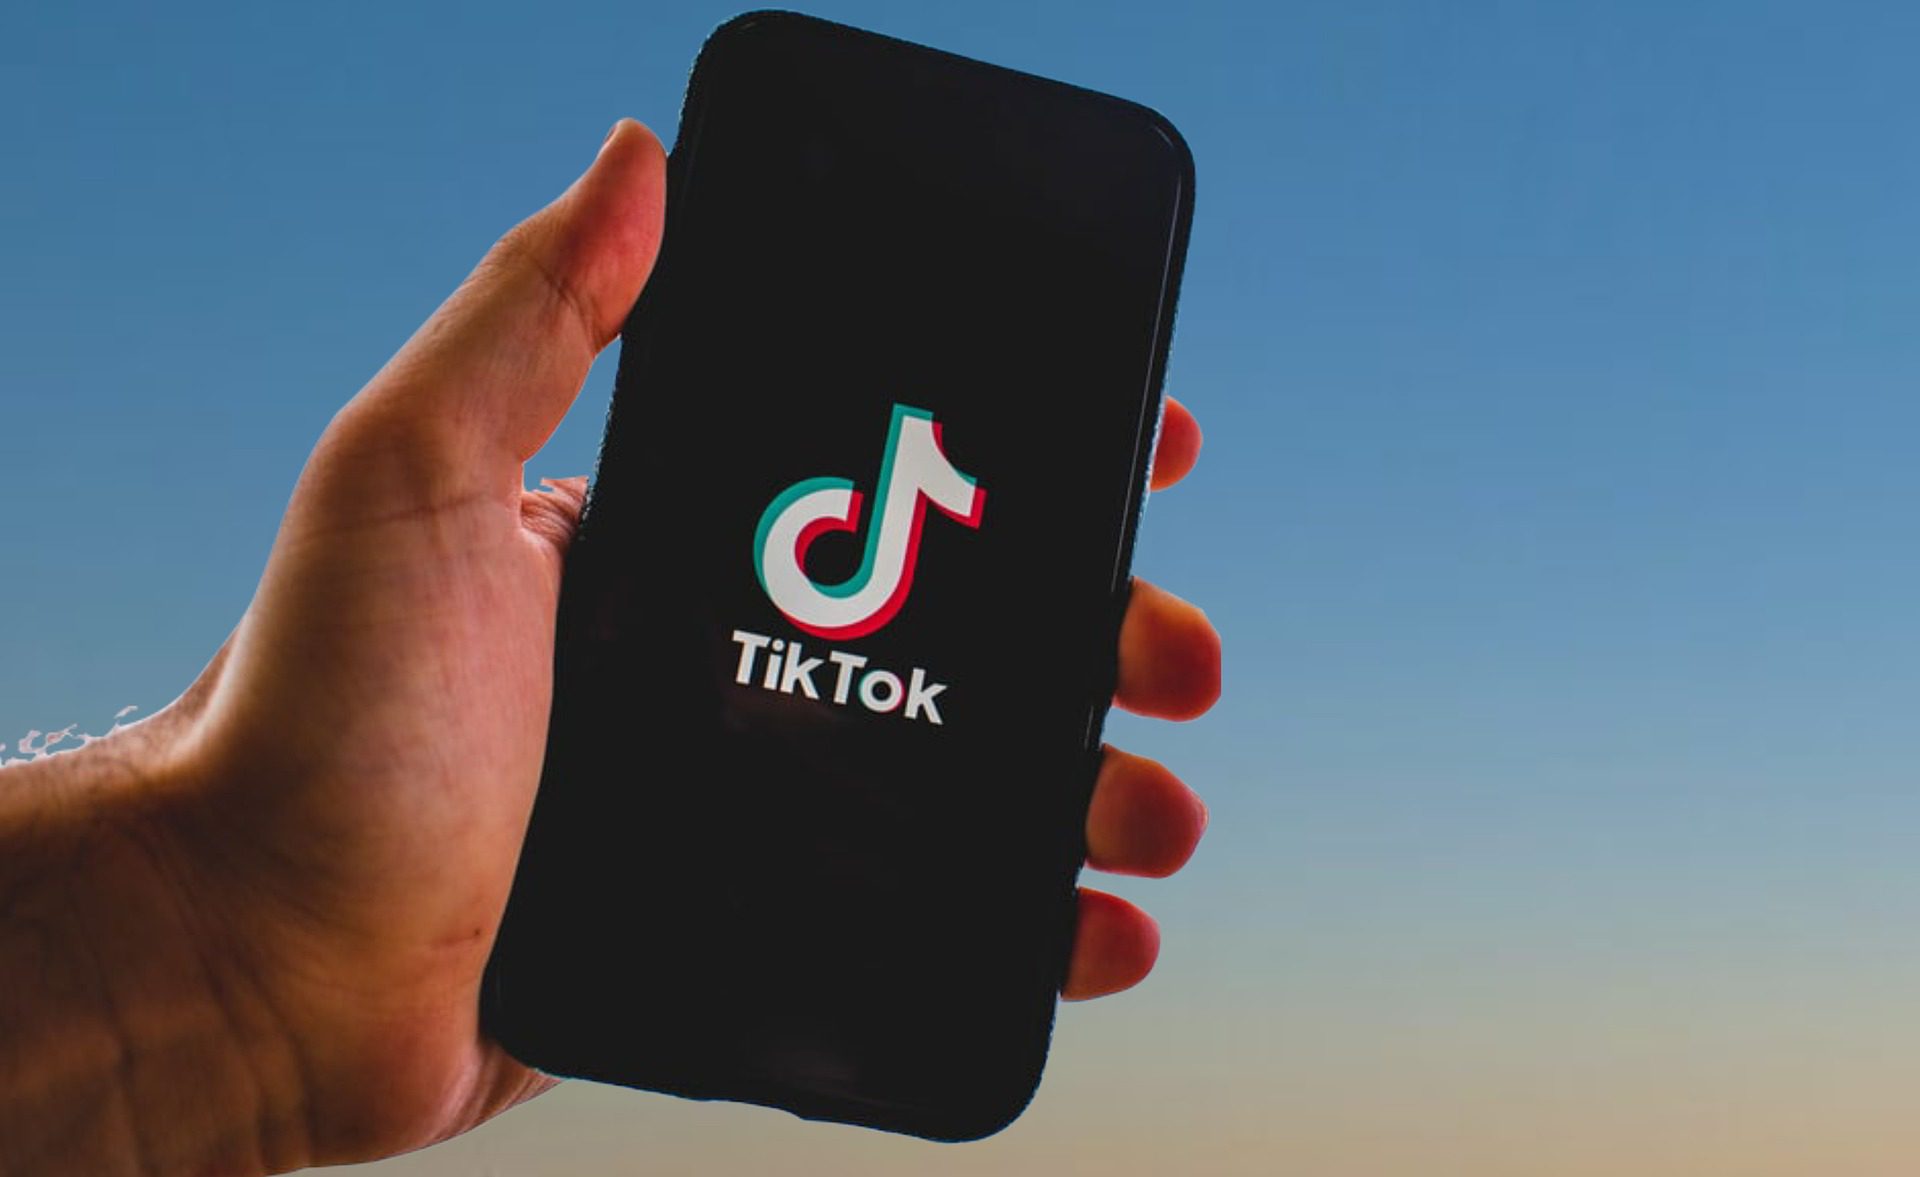 Comment TikTok est-elle devenue l’application la plus téléchargee au monde